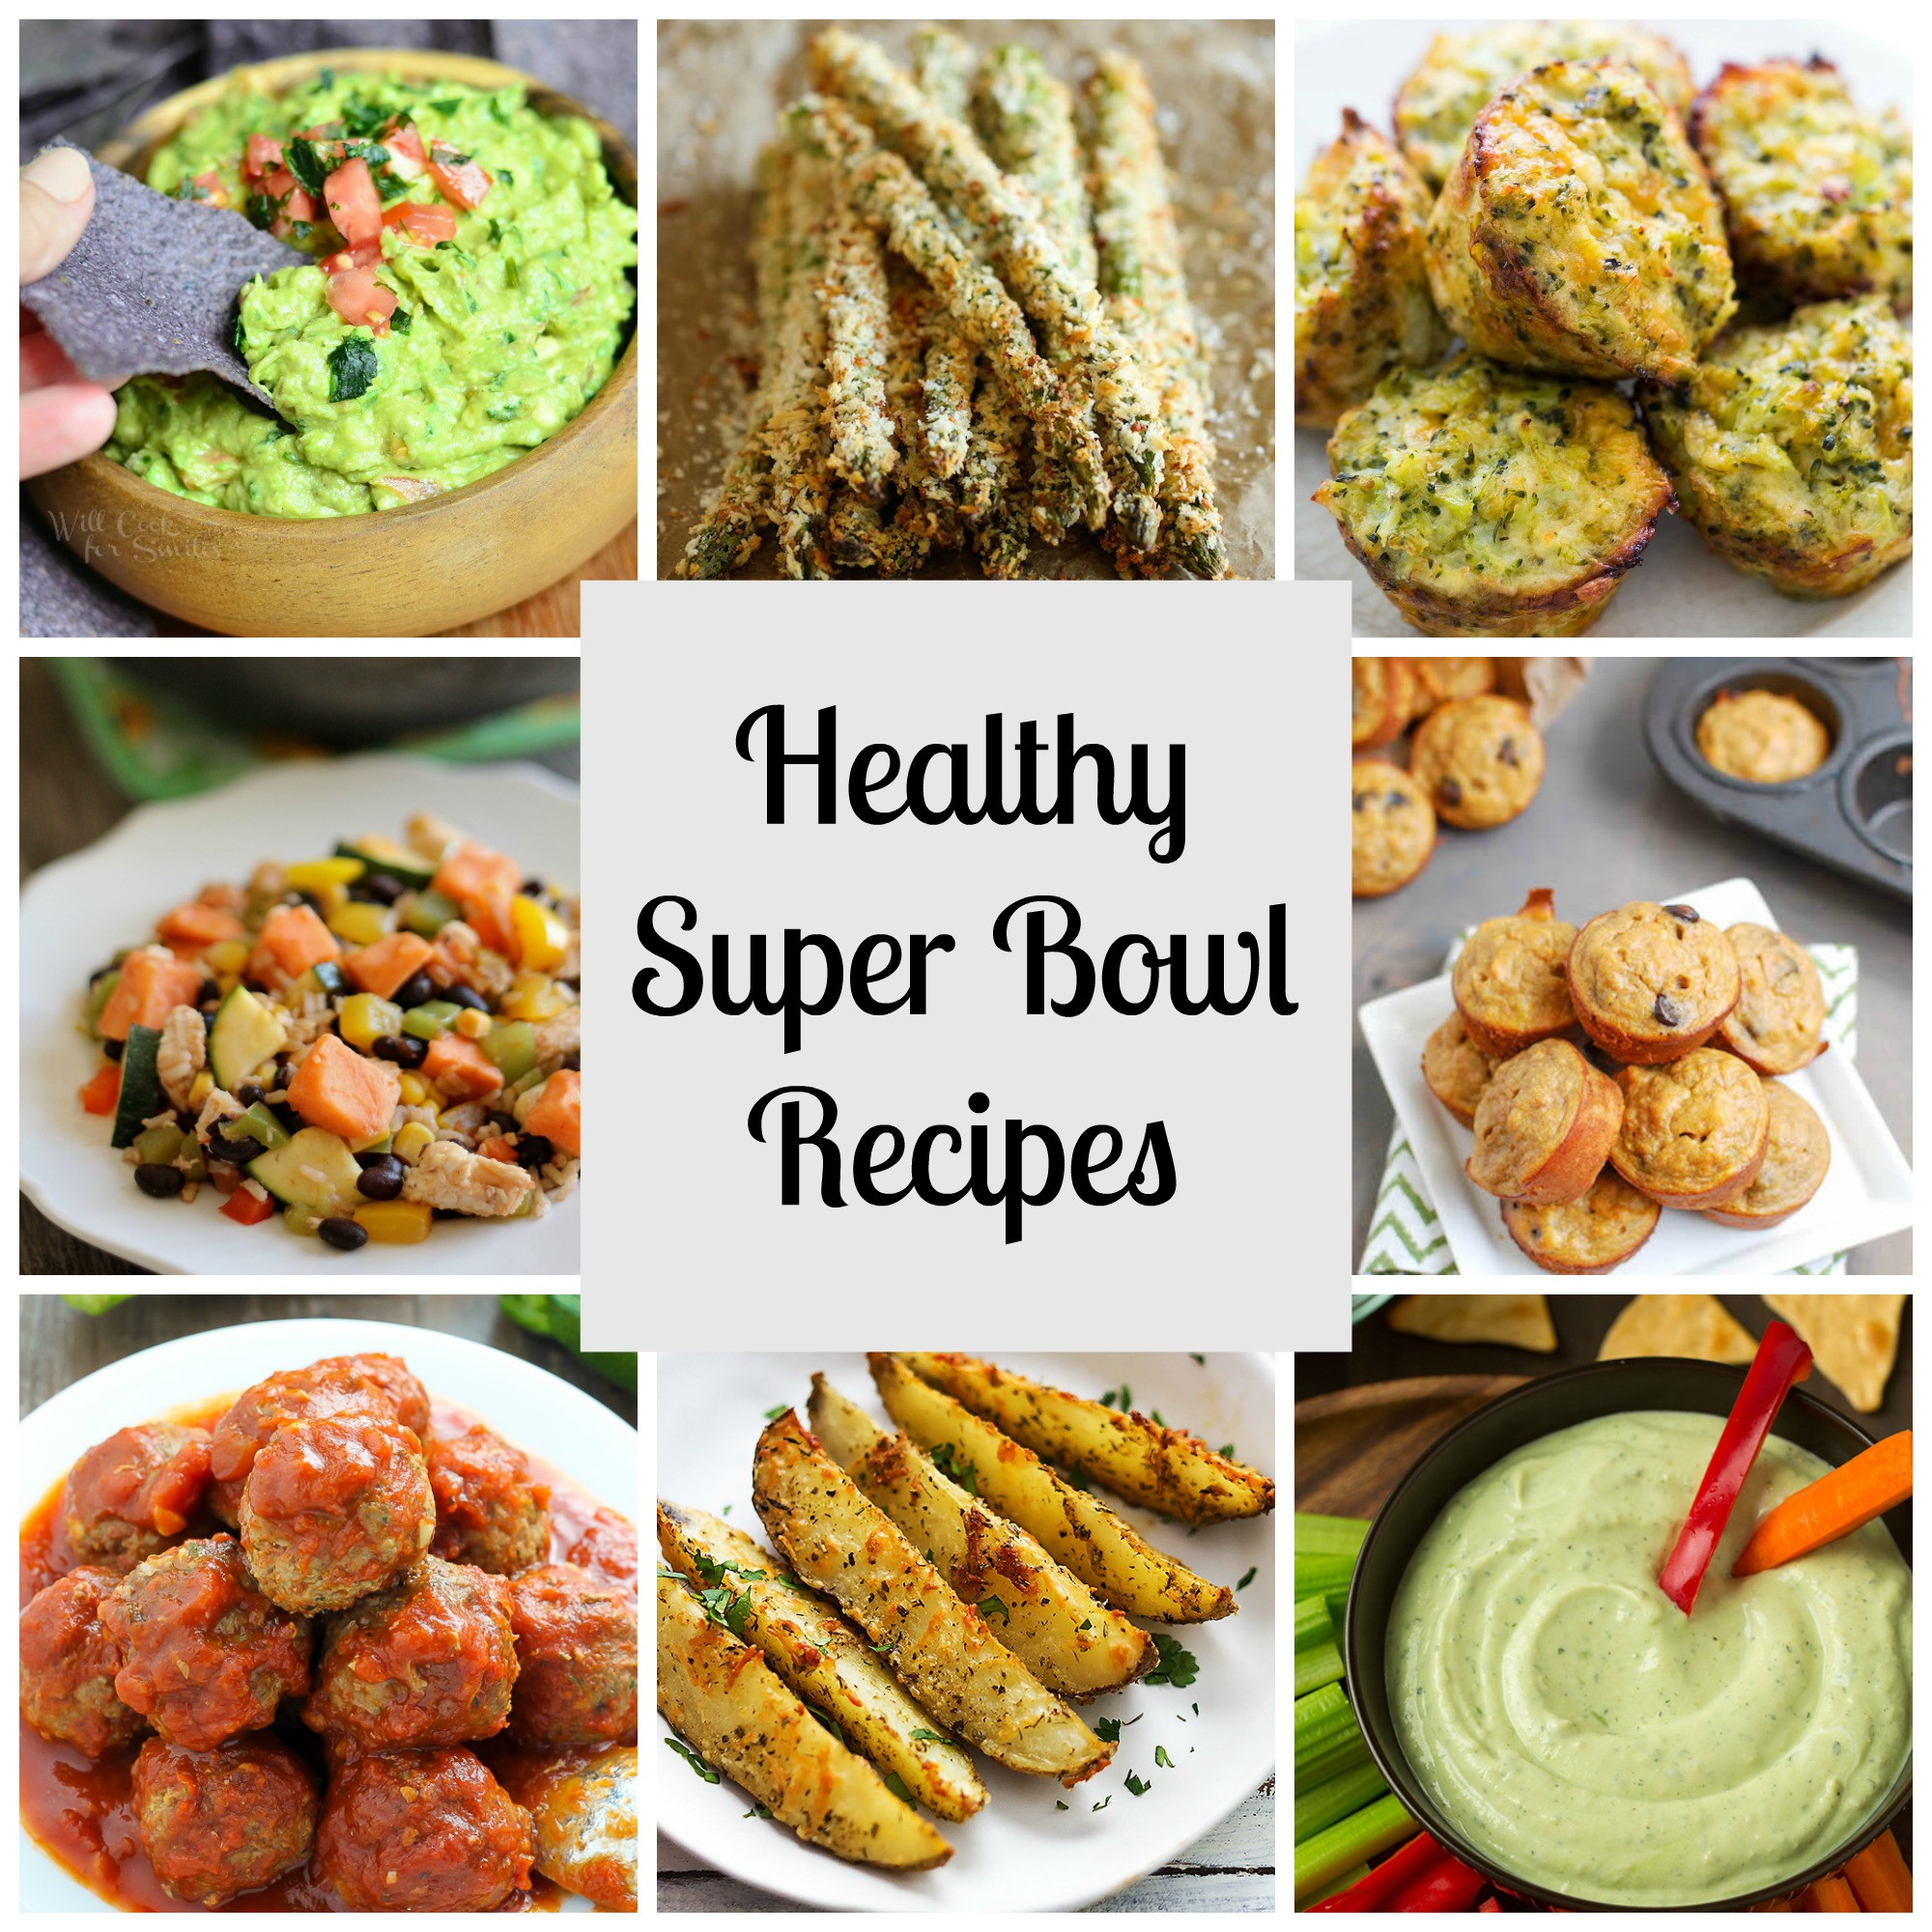 Easy Super Bowl Recipes
 Healthy Super Bowl Recipes RunEatSnap